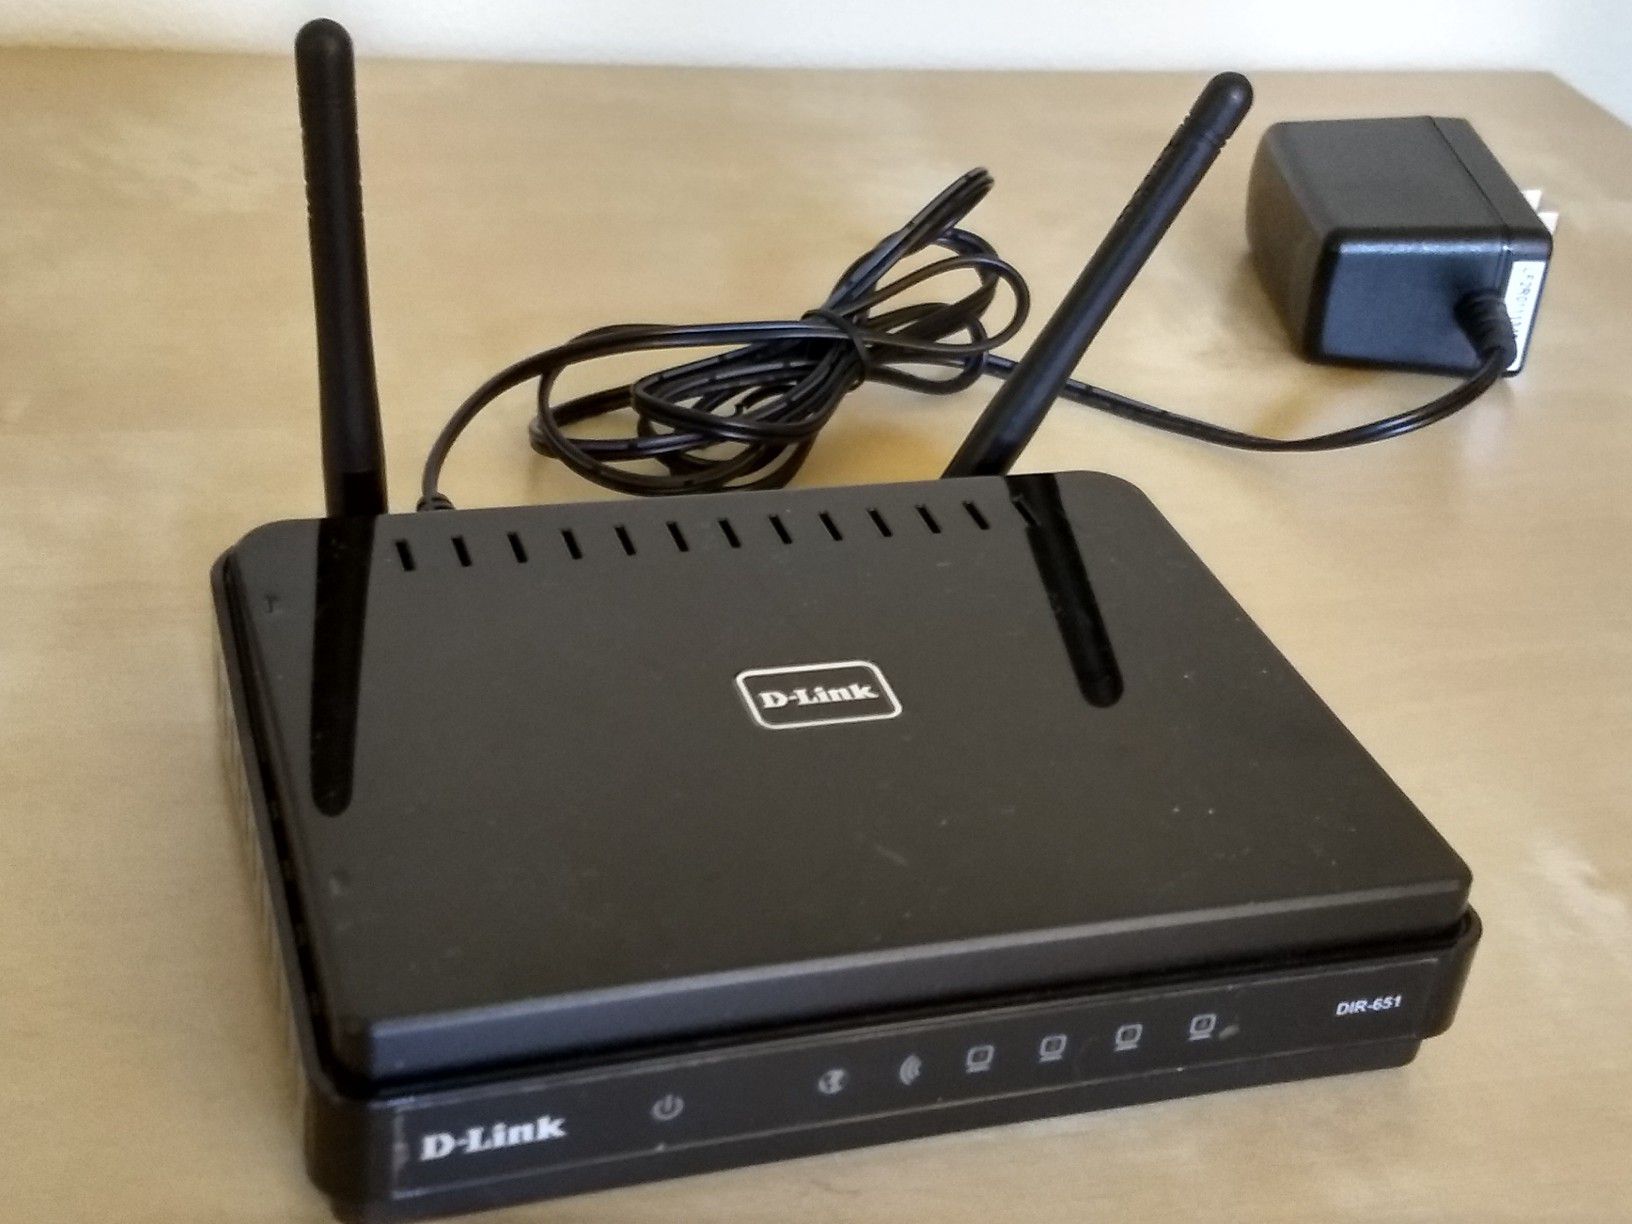 D-Link DIR 561 Wireless Gigabit router 300 N